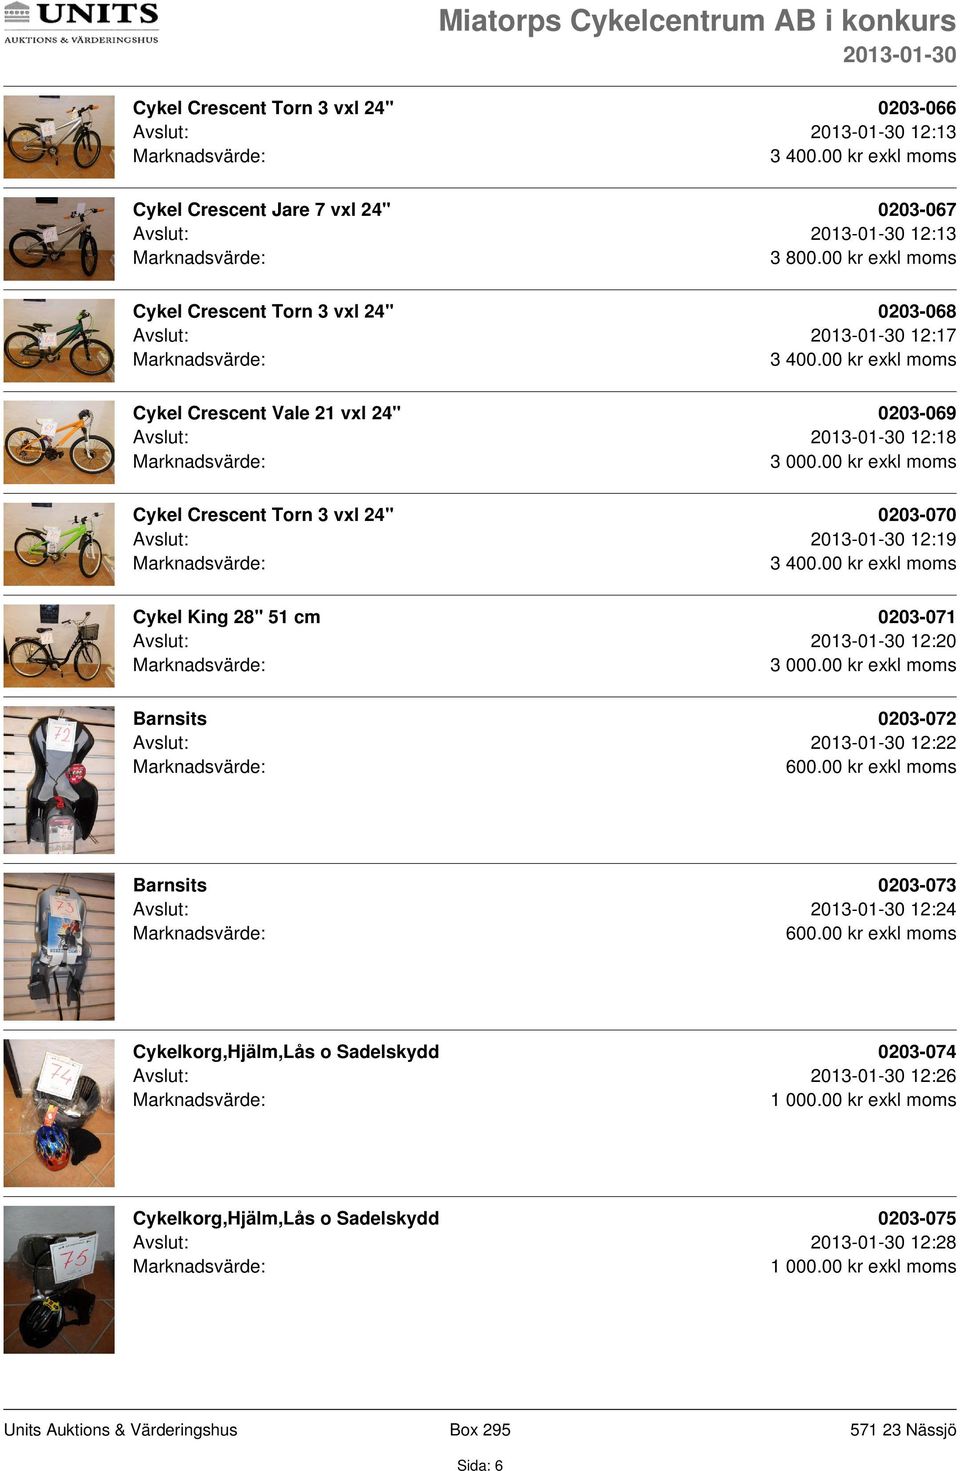 Cykel Crescent Torn 3 vxl 24" 0203-070 Avslut: 12:19 Cykel King 28" 51 cm 0203-071 Avslut: 12:20 Barnsits 0203-072 Avslut: